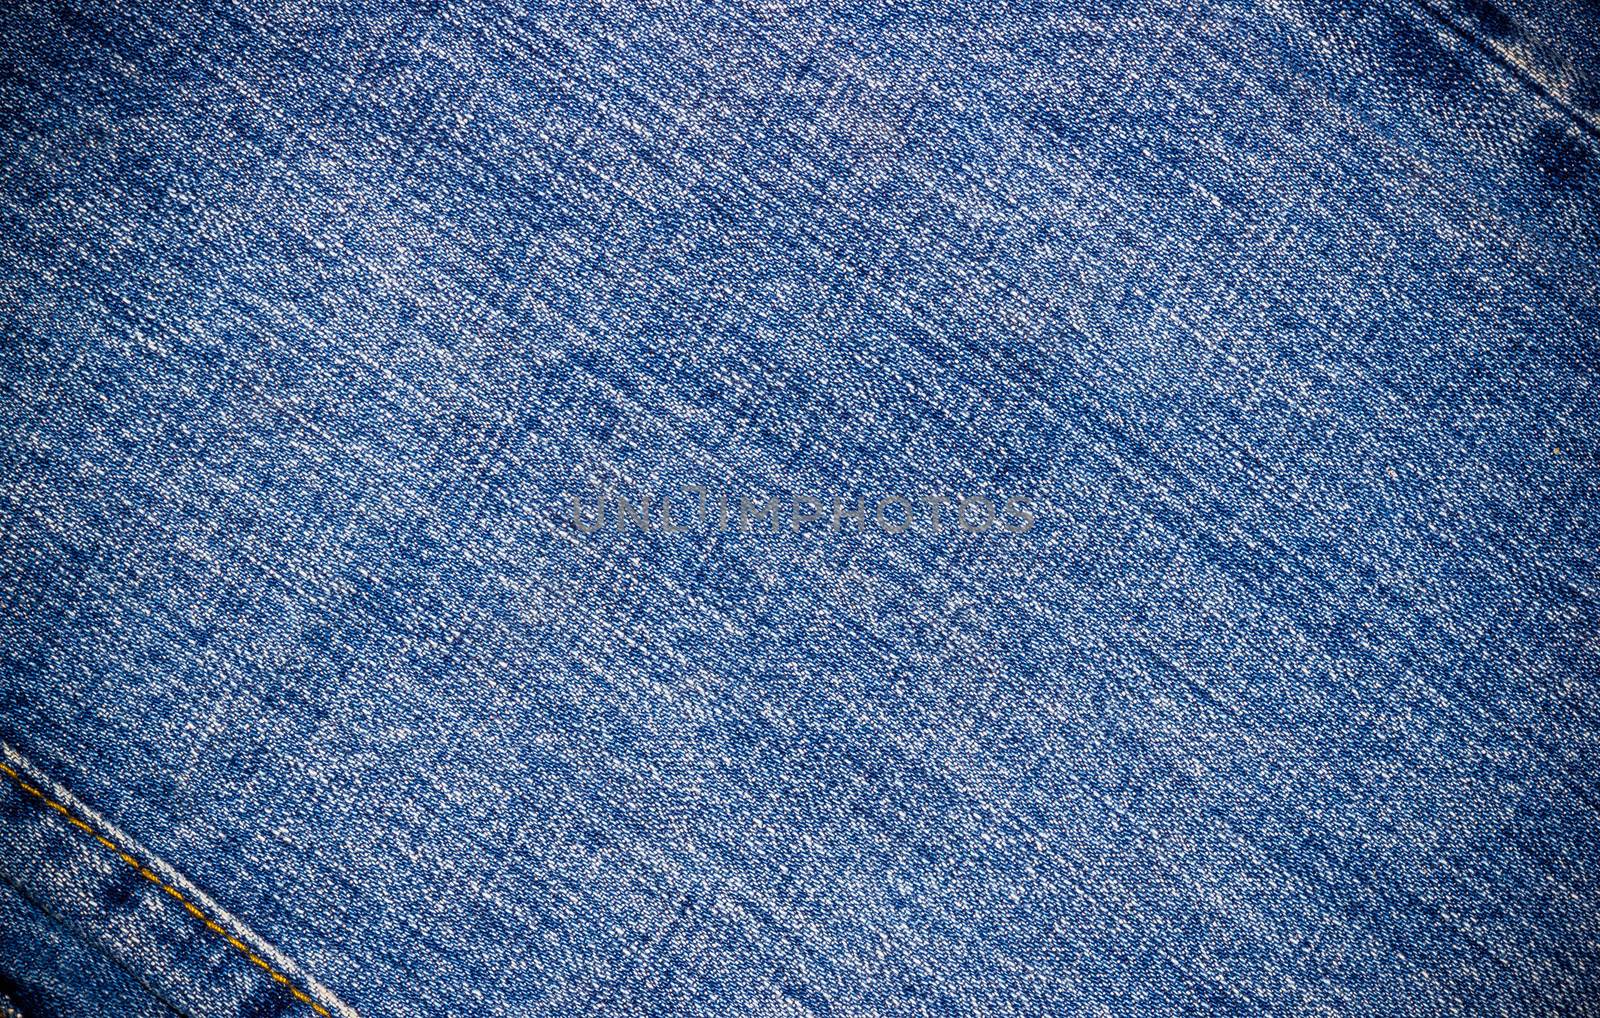 Blue jeans texture. Blue jeans background.